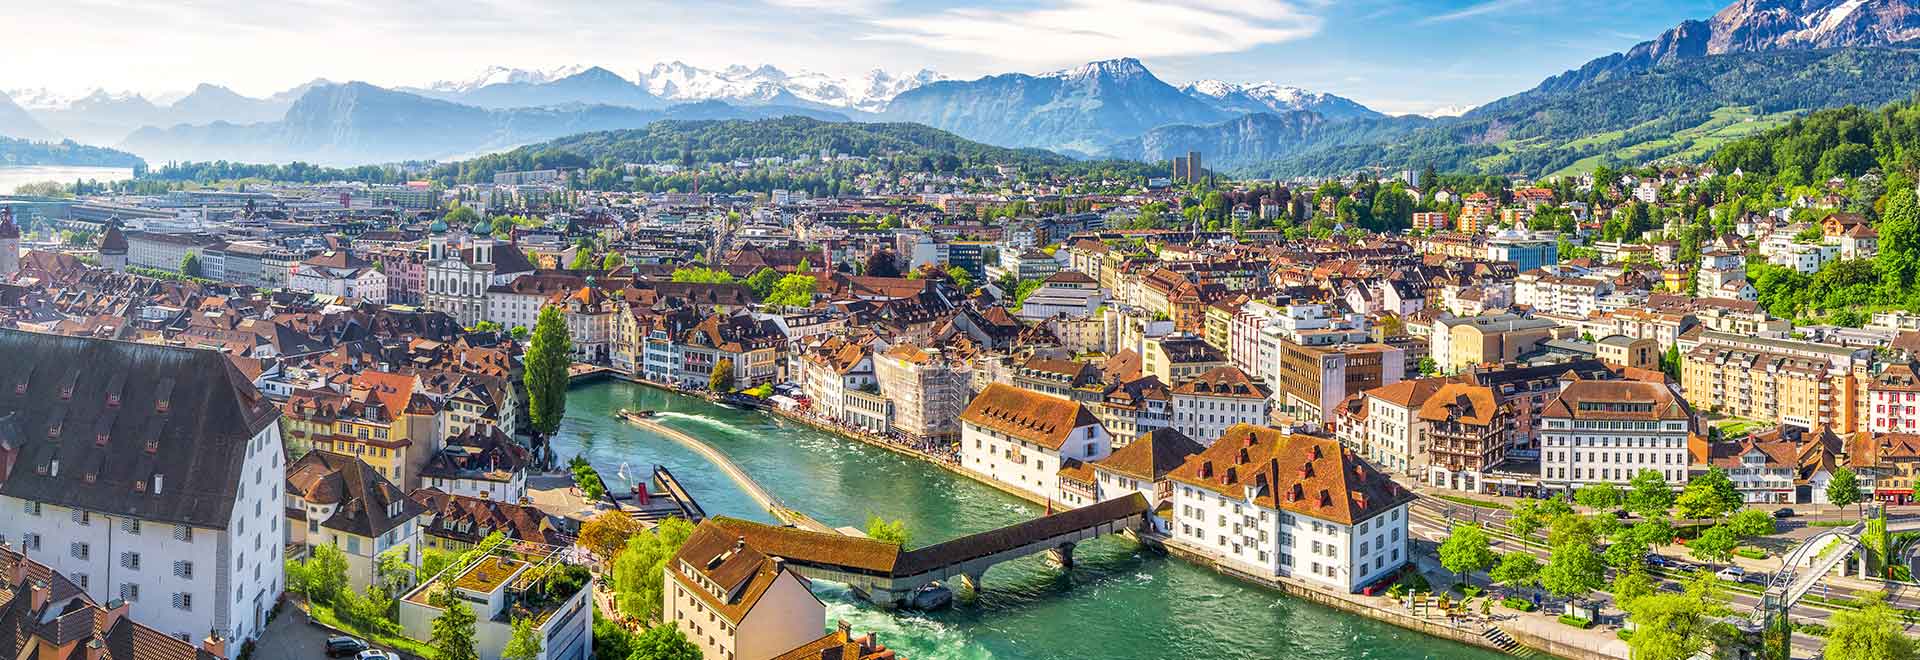 Europe Switzerland Rhine River Cruise MH